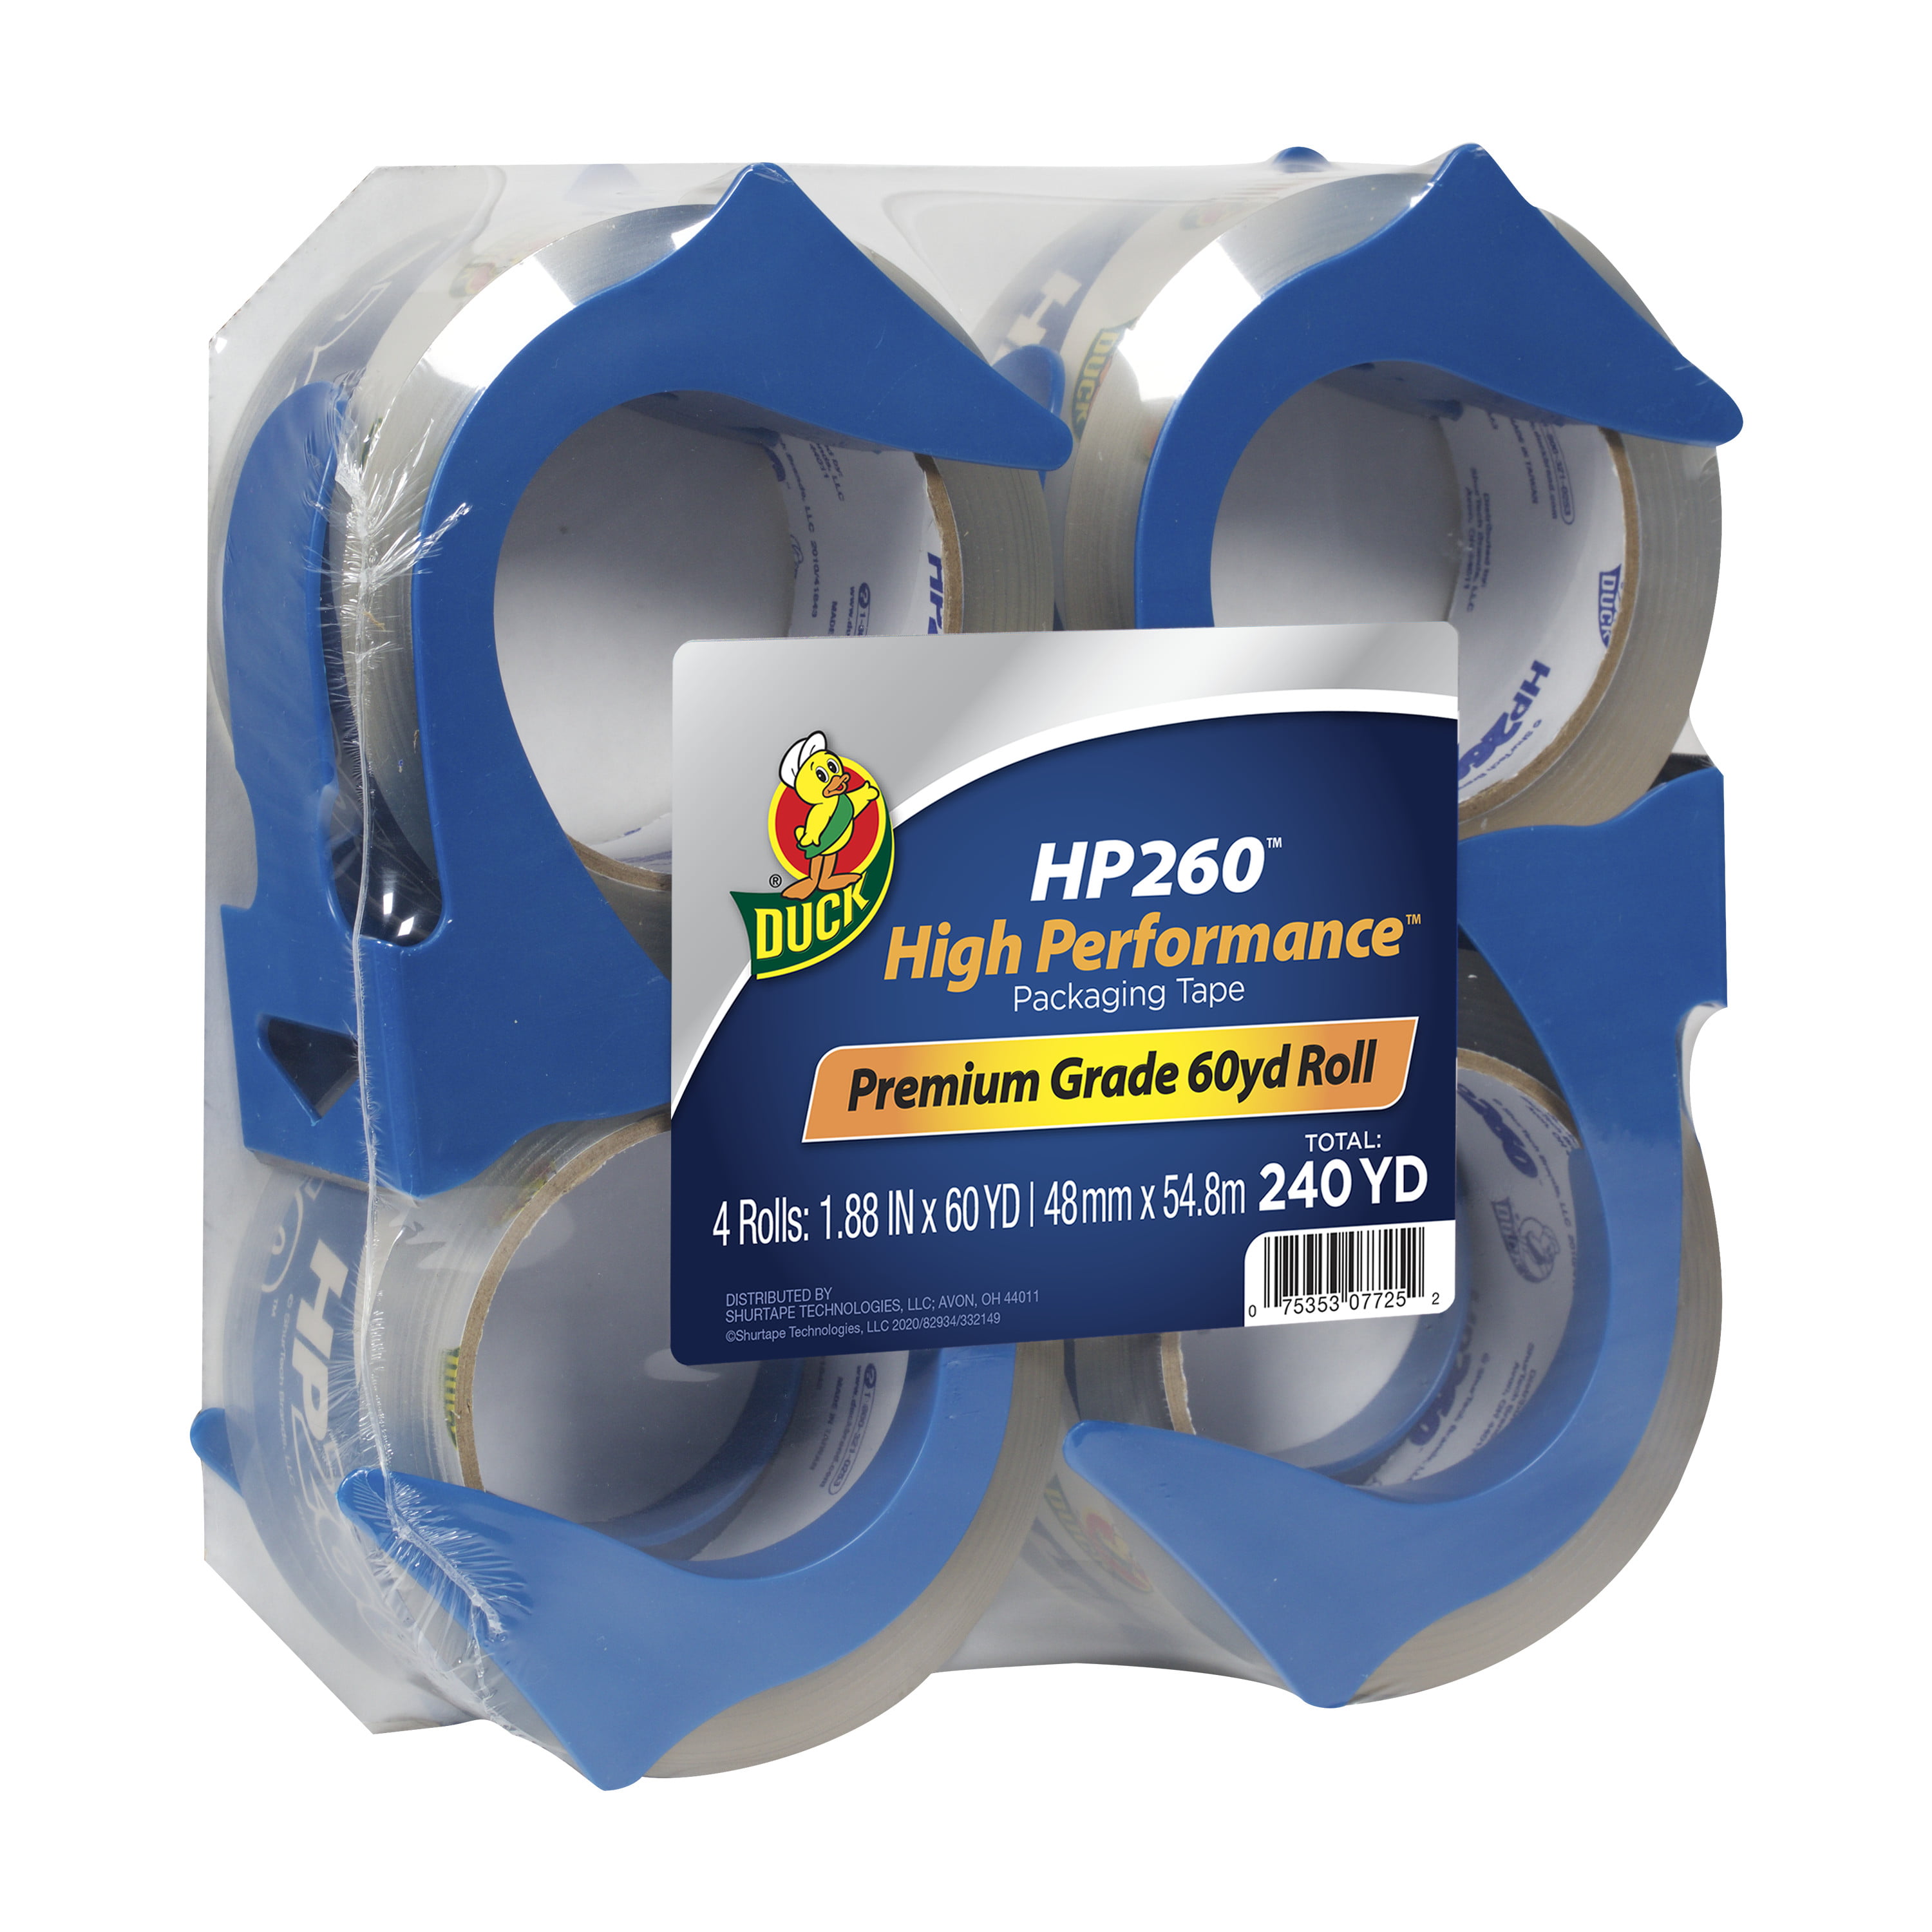 8 Clear Rolls Duck HP260 Heavy Duty Packaging Tape Refill 1.88 Inch x 60 Yard 